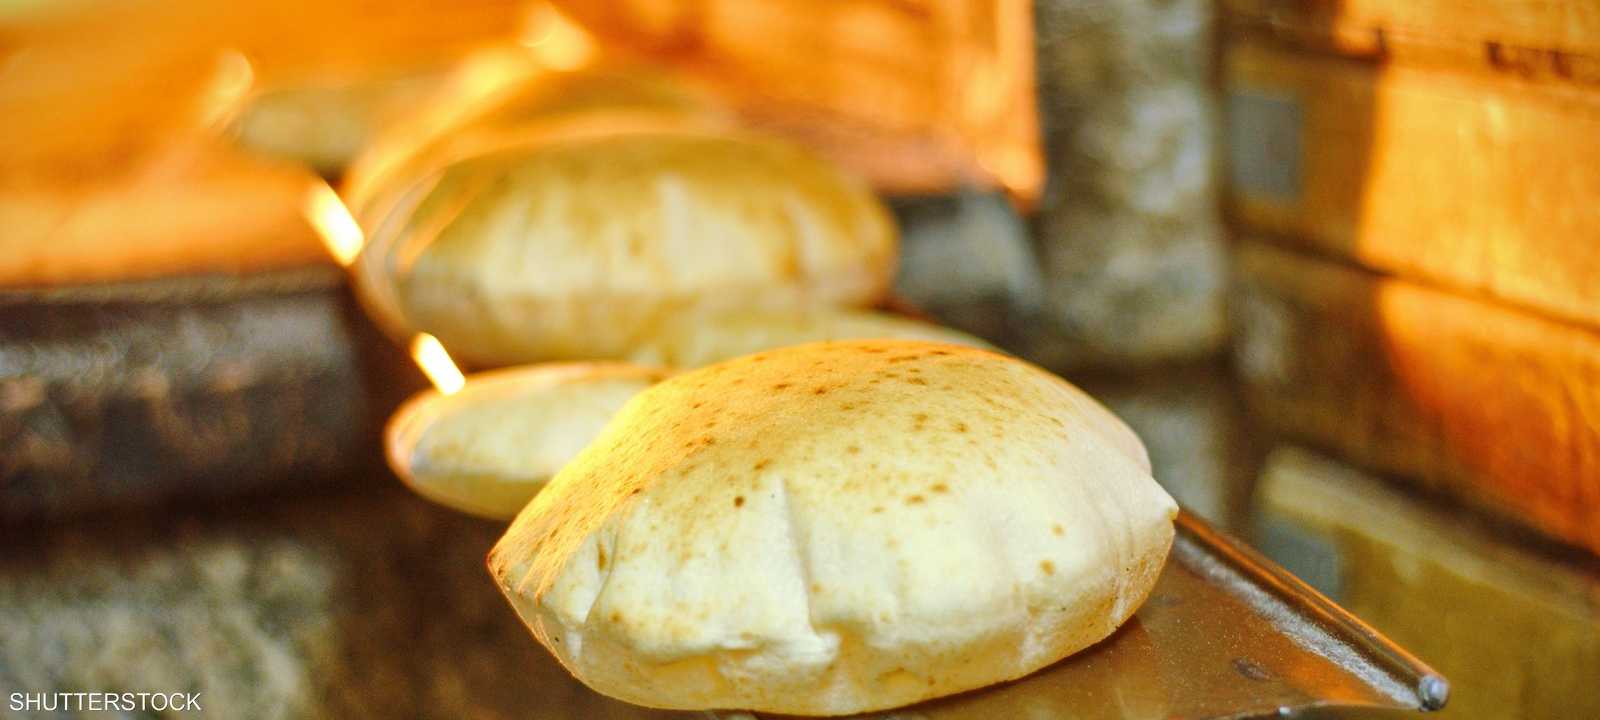 إضافة الغلوتين للخبز زاد من مخاطره الصحية